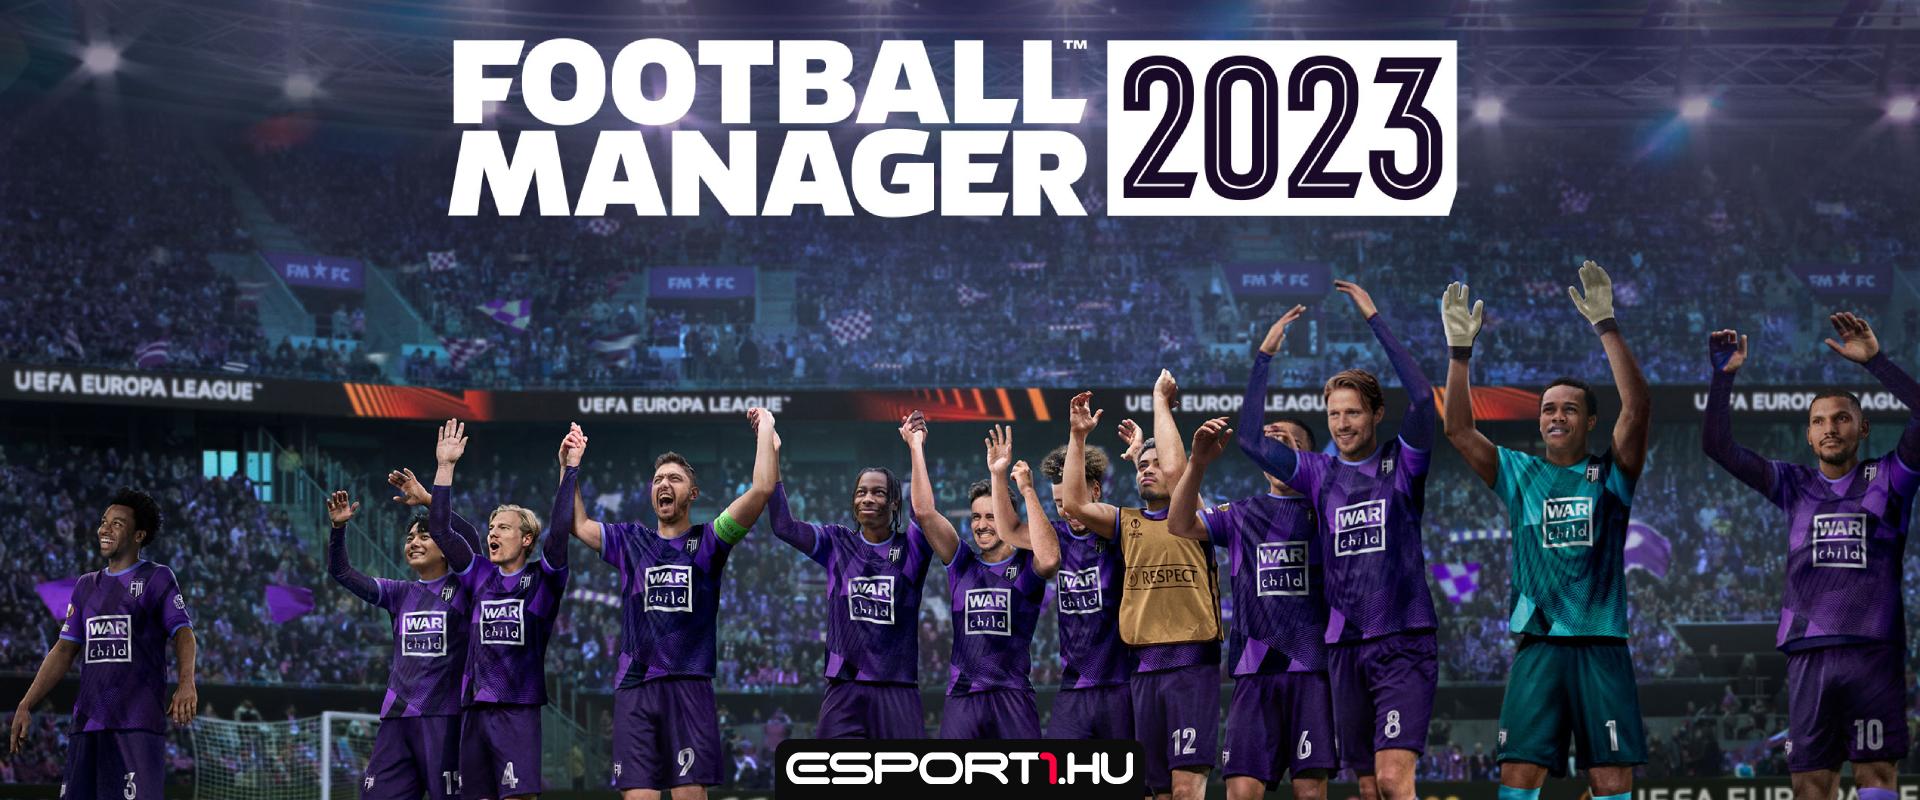 Football Manager 2023 teszt - Megéri megvenni az újat?